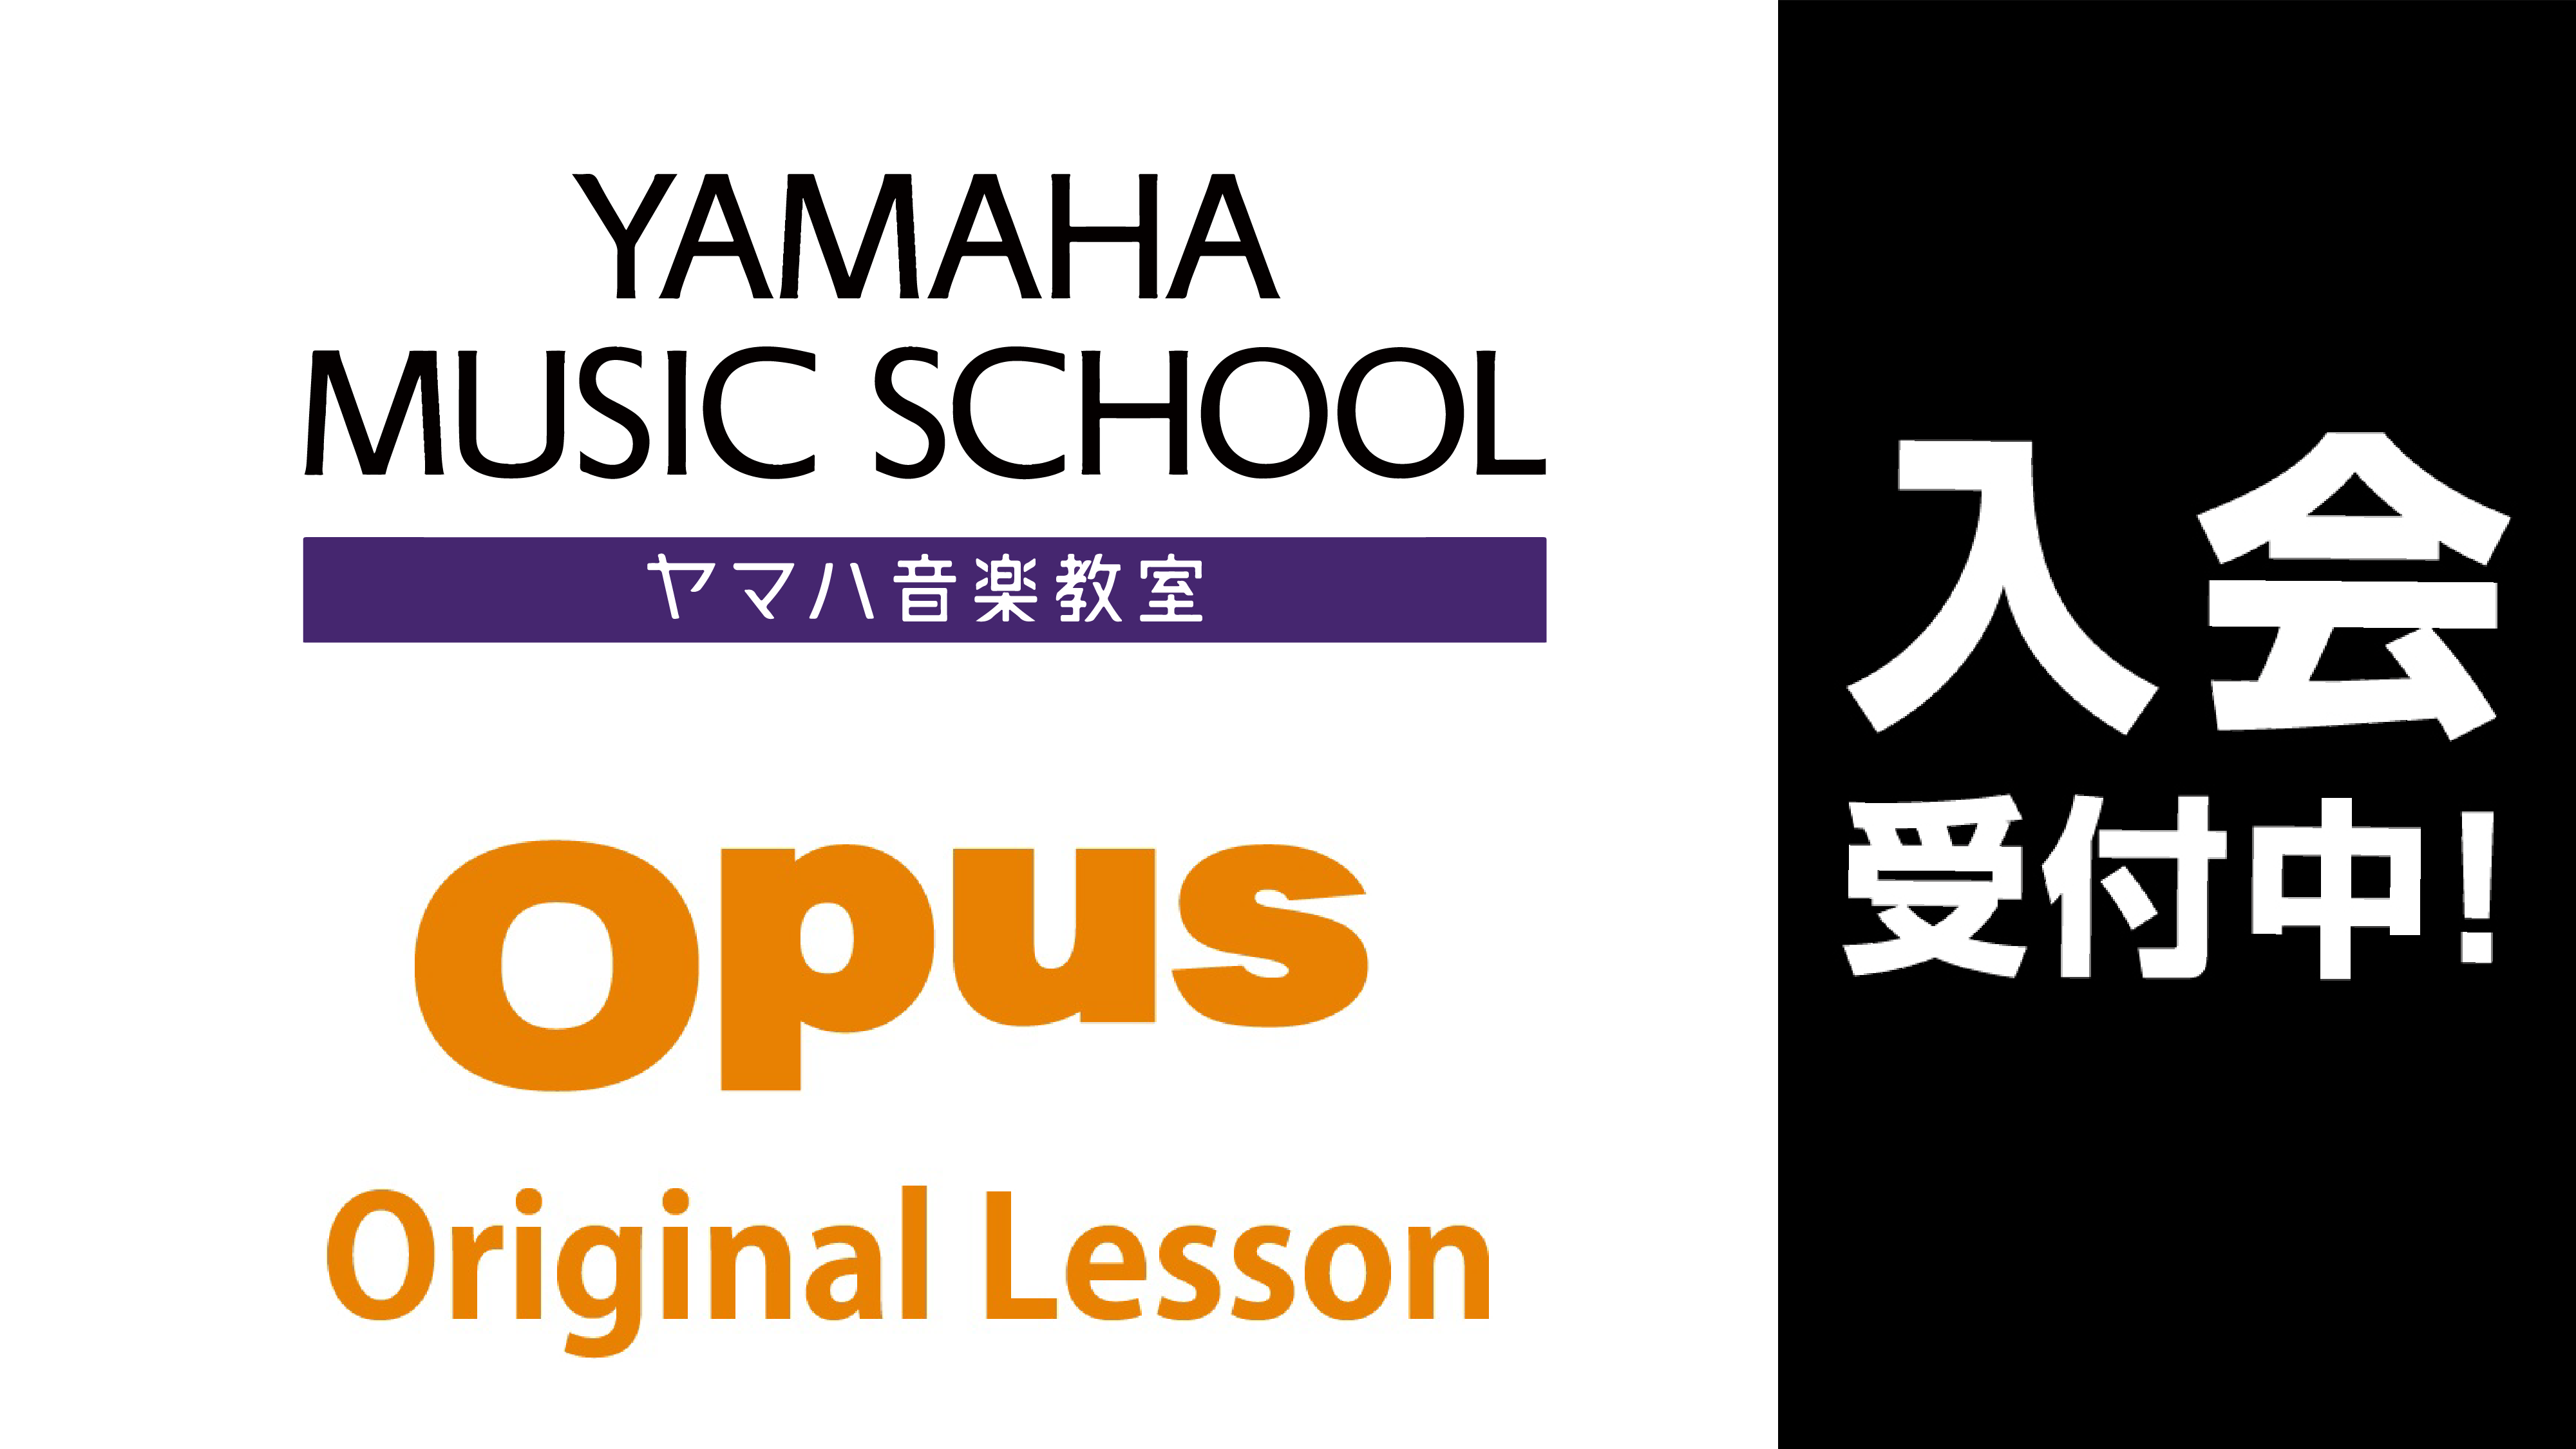 様々な楽器や音楽の教室がございます。